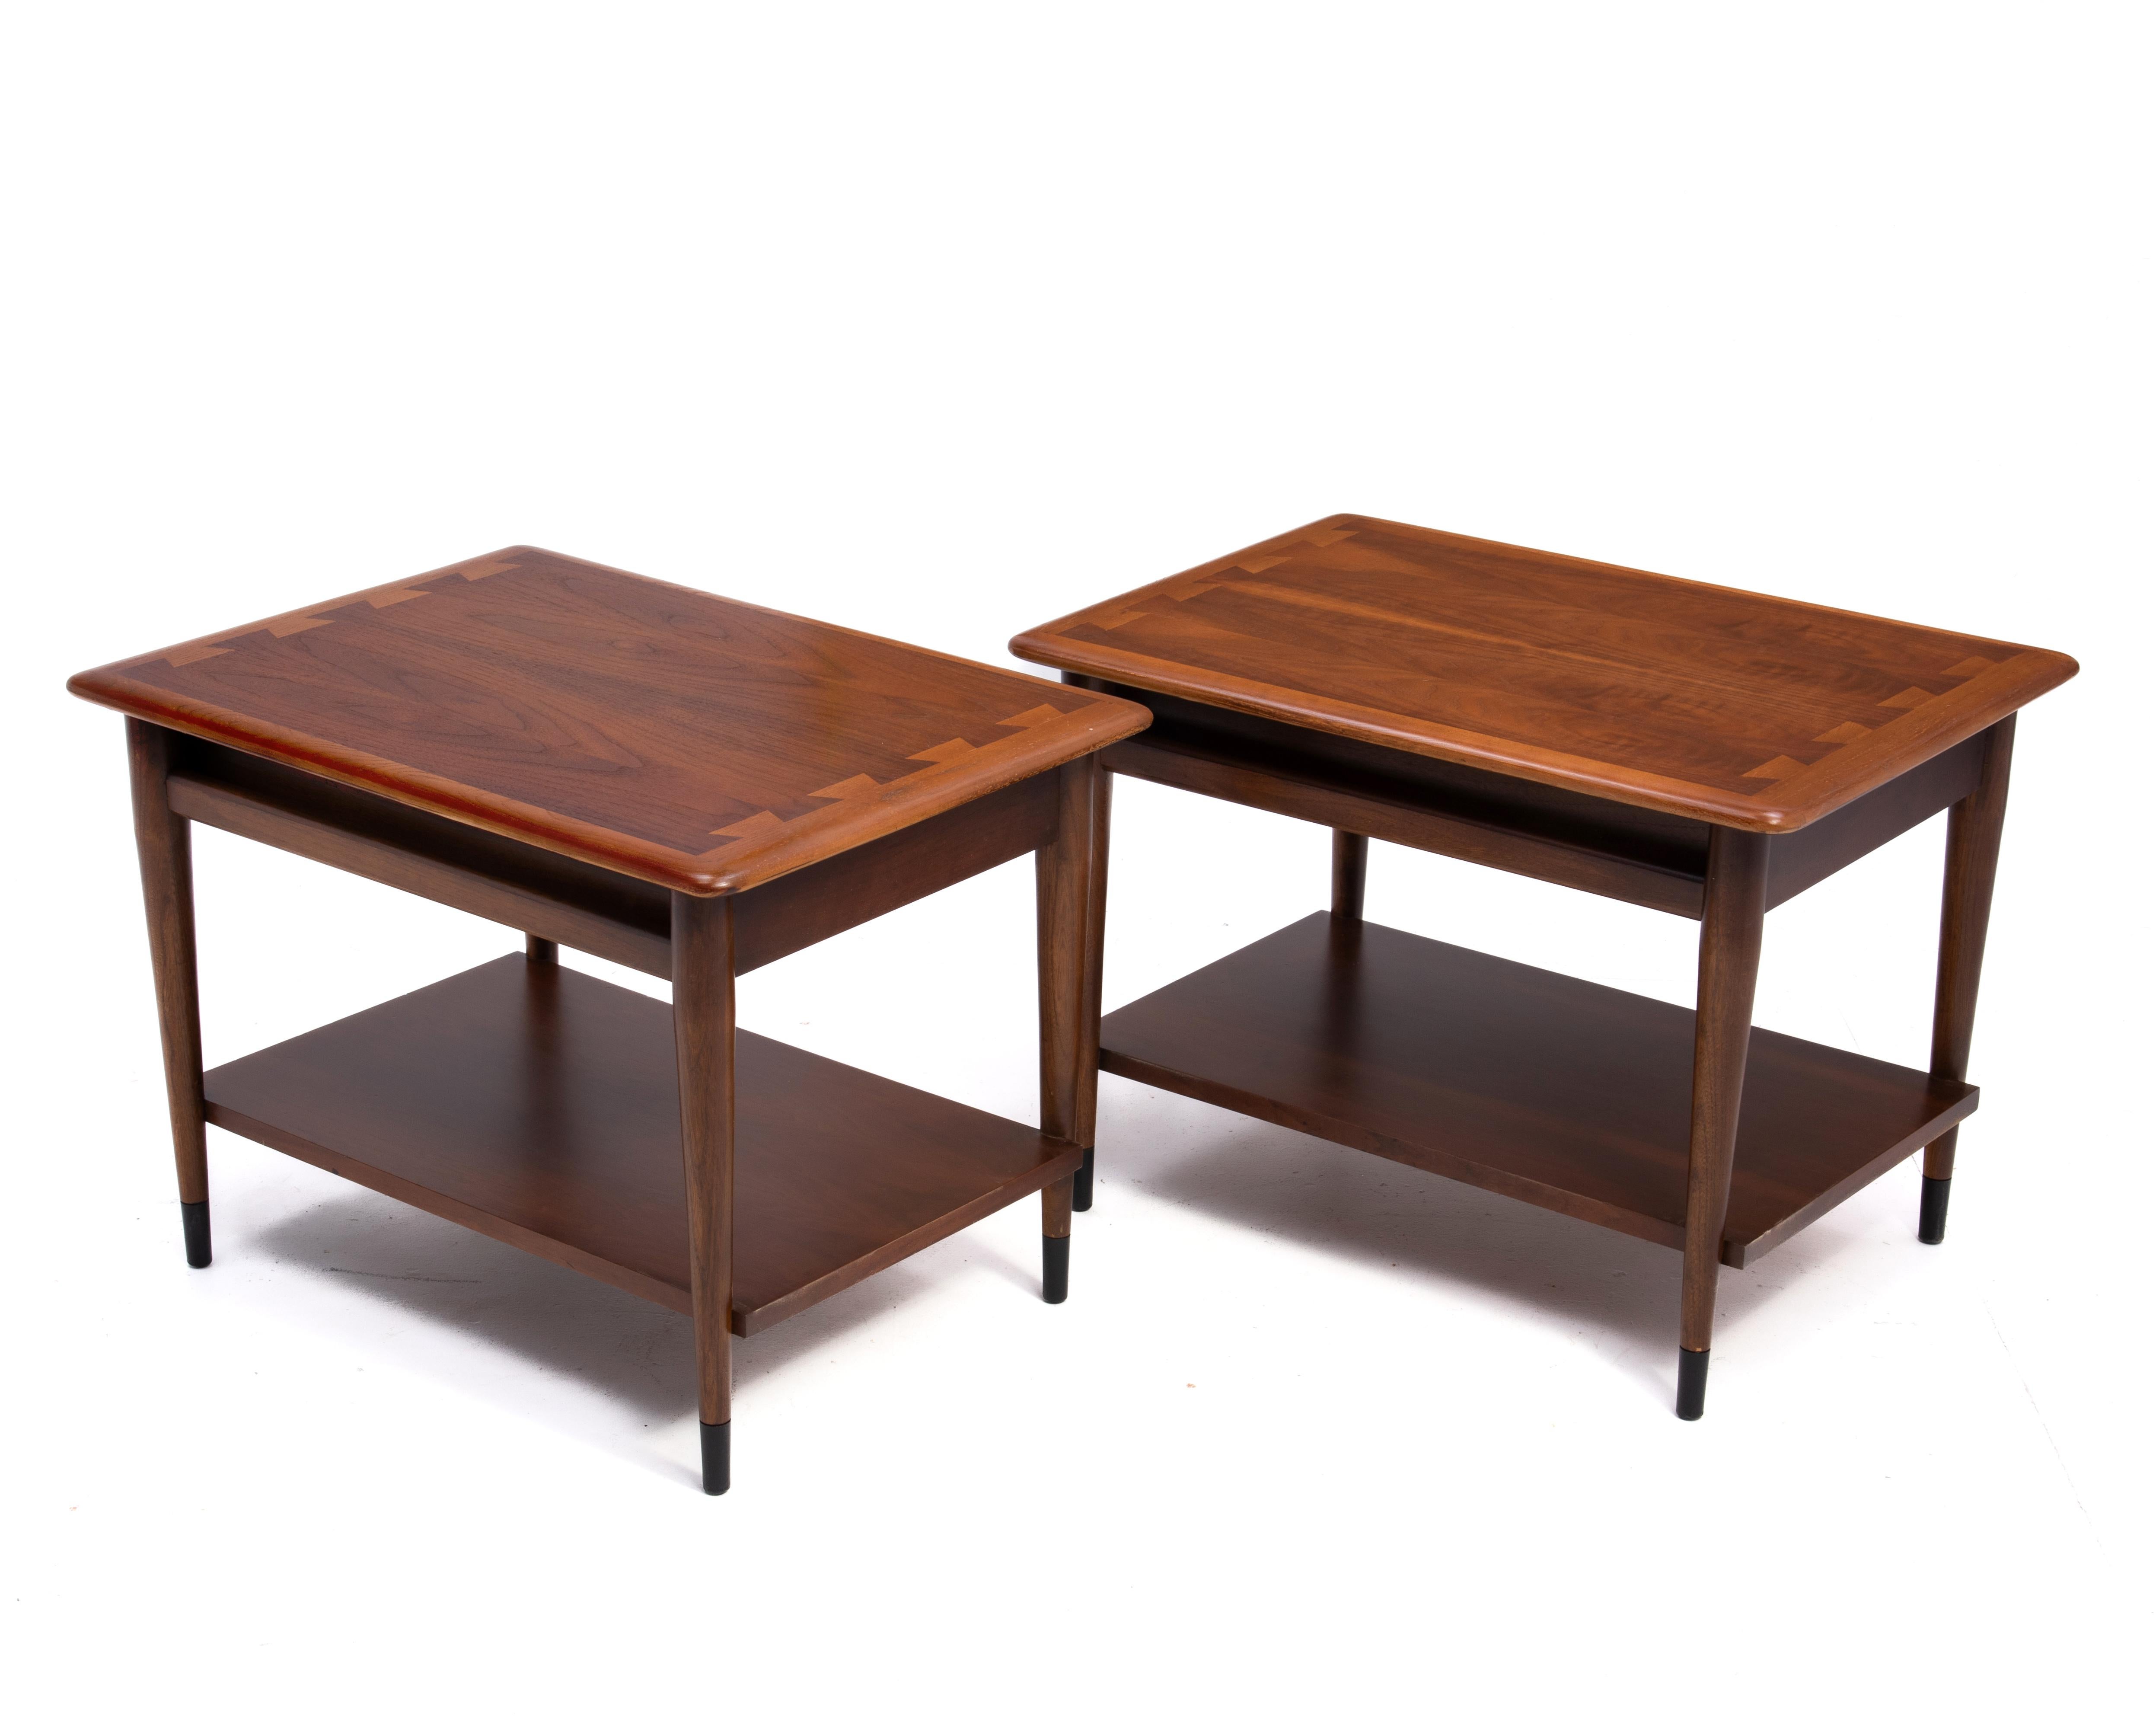 Paire de tables d'appoint Acclaim avec un seul tiroir, conçues par Andre Bus pour Lane Furniture à Altavista en Virginie. Icône et de bonne facture, cette paire de tables présente de magnifiques plateaux en noyer assortis aux livres.